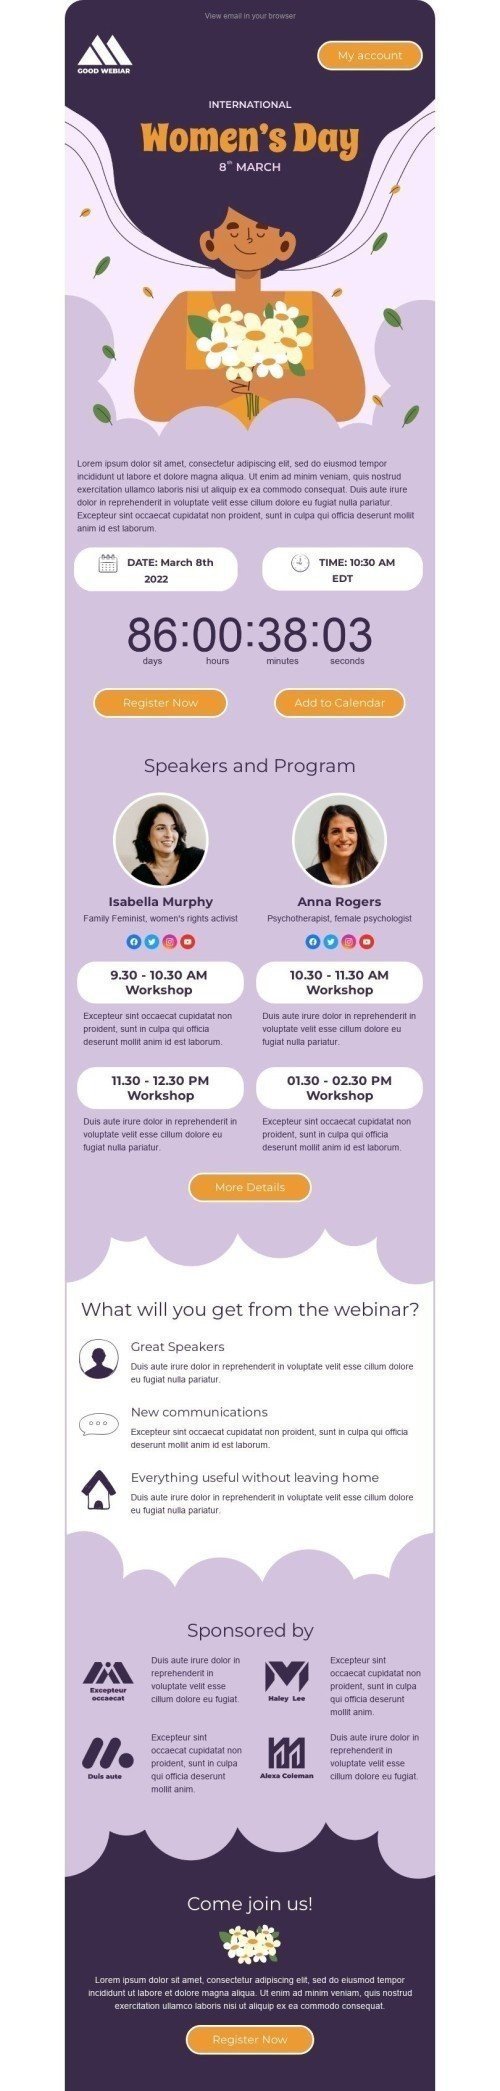 Women's Day Email Template "Webinar for women" for Webinars industry desktop view